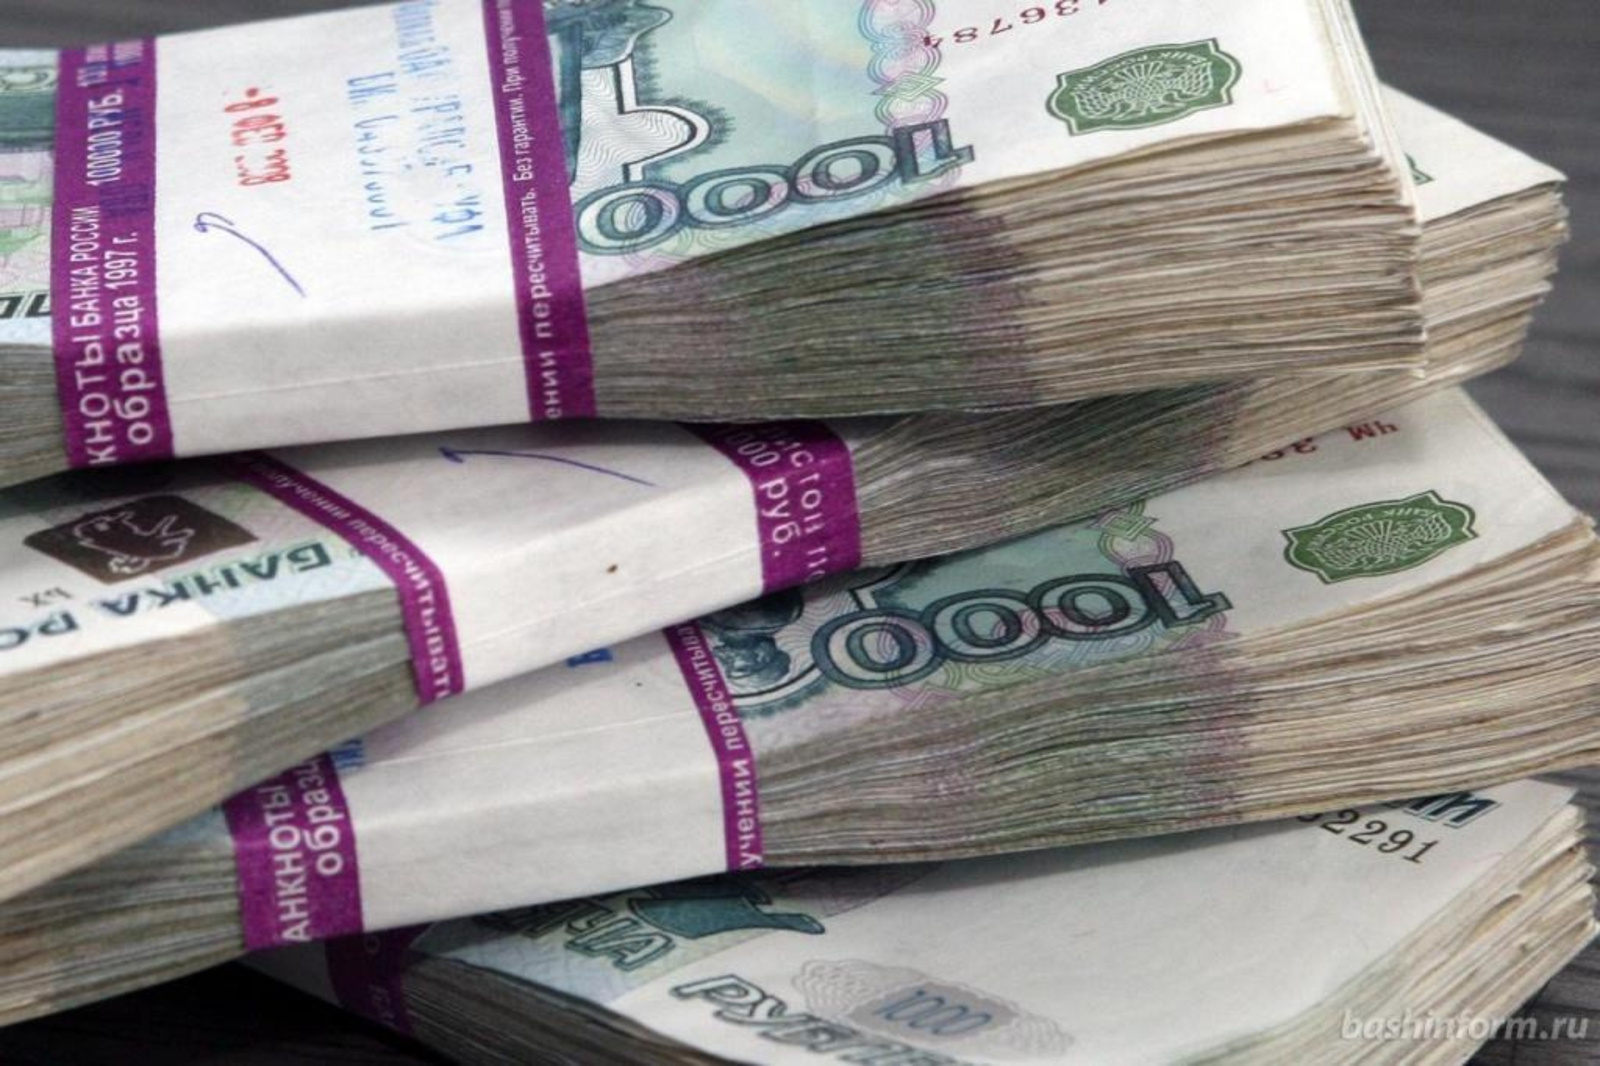 В Башкортостане 91-летняя труженица тыла лишилась почти полмиллиона рублей сбережений